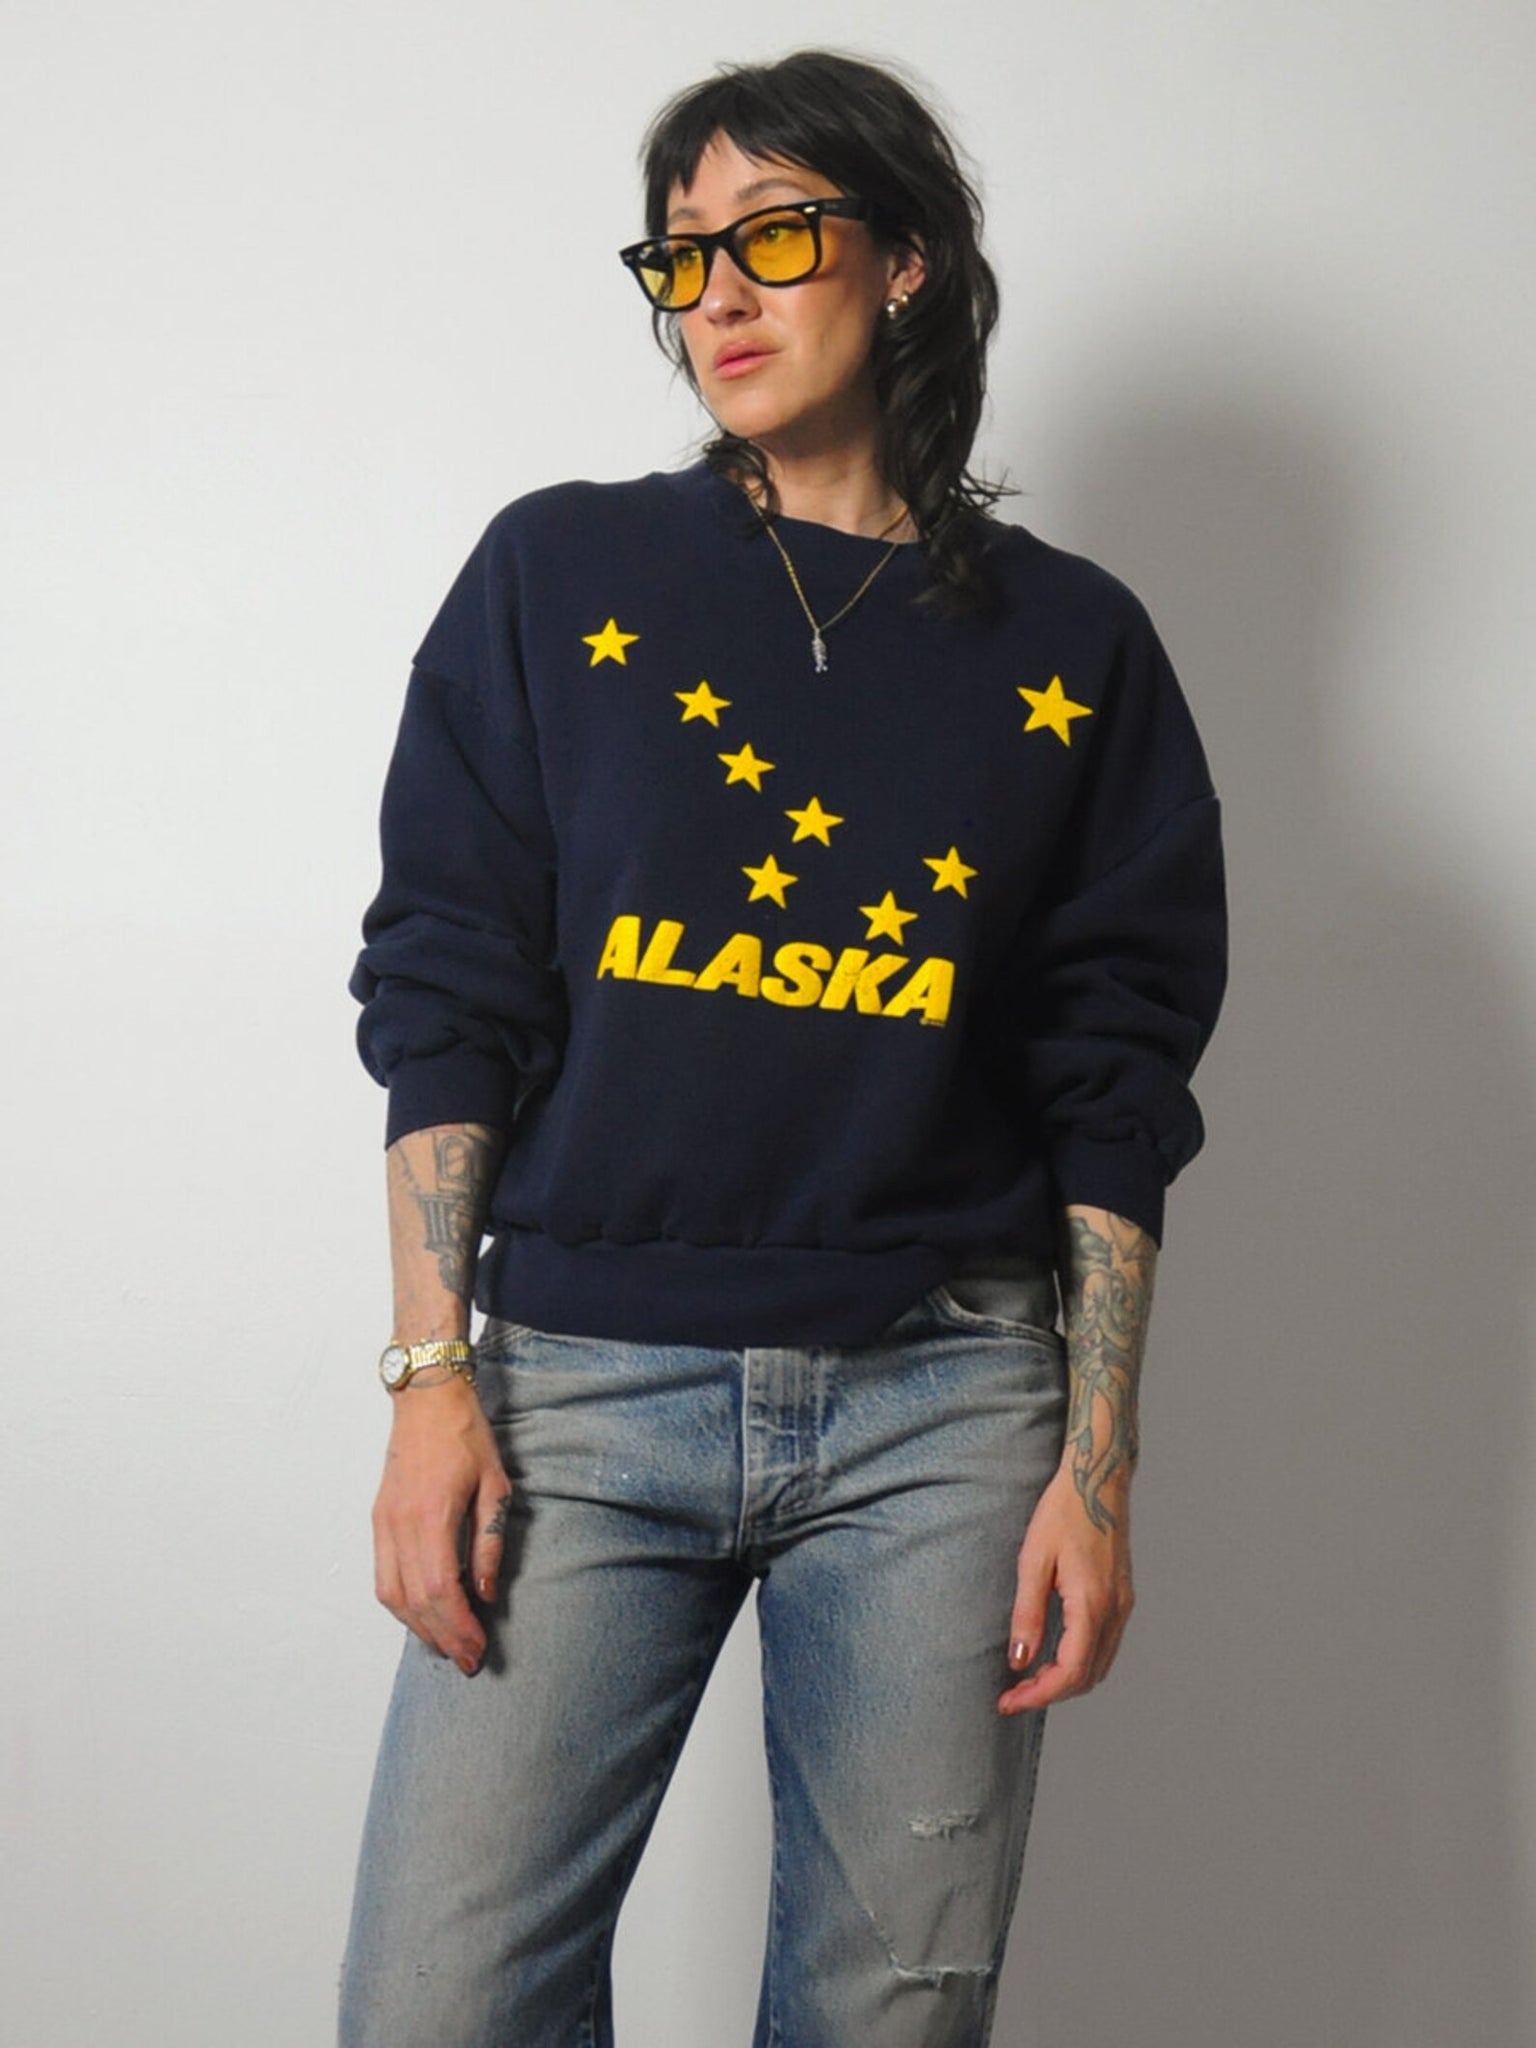 Alaska Big Dipper Sweatshirt